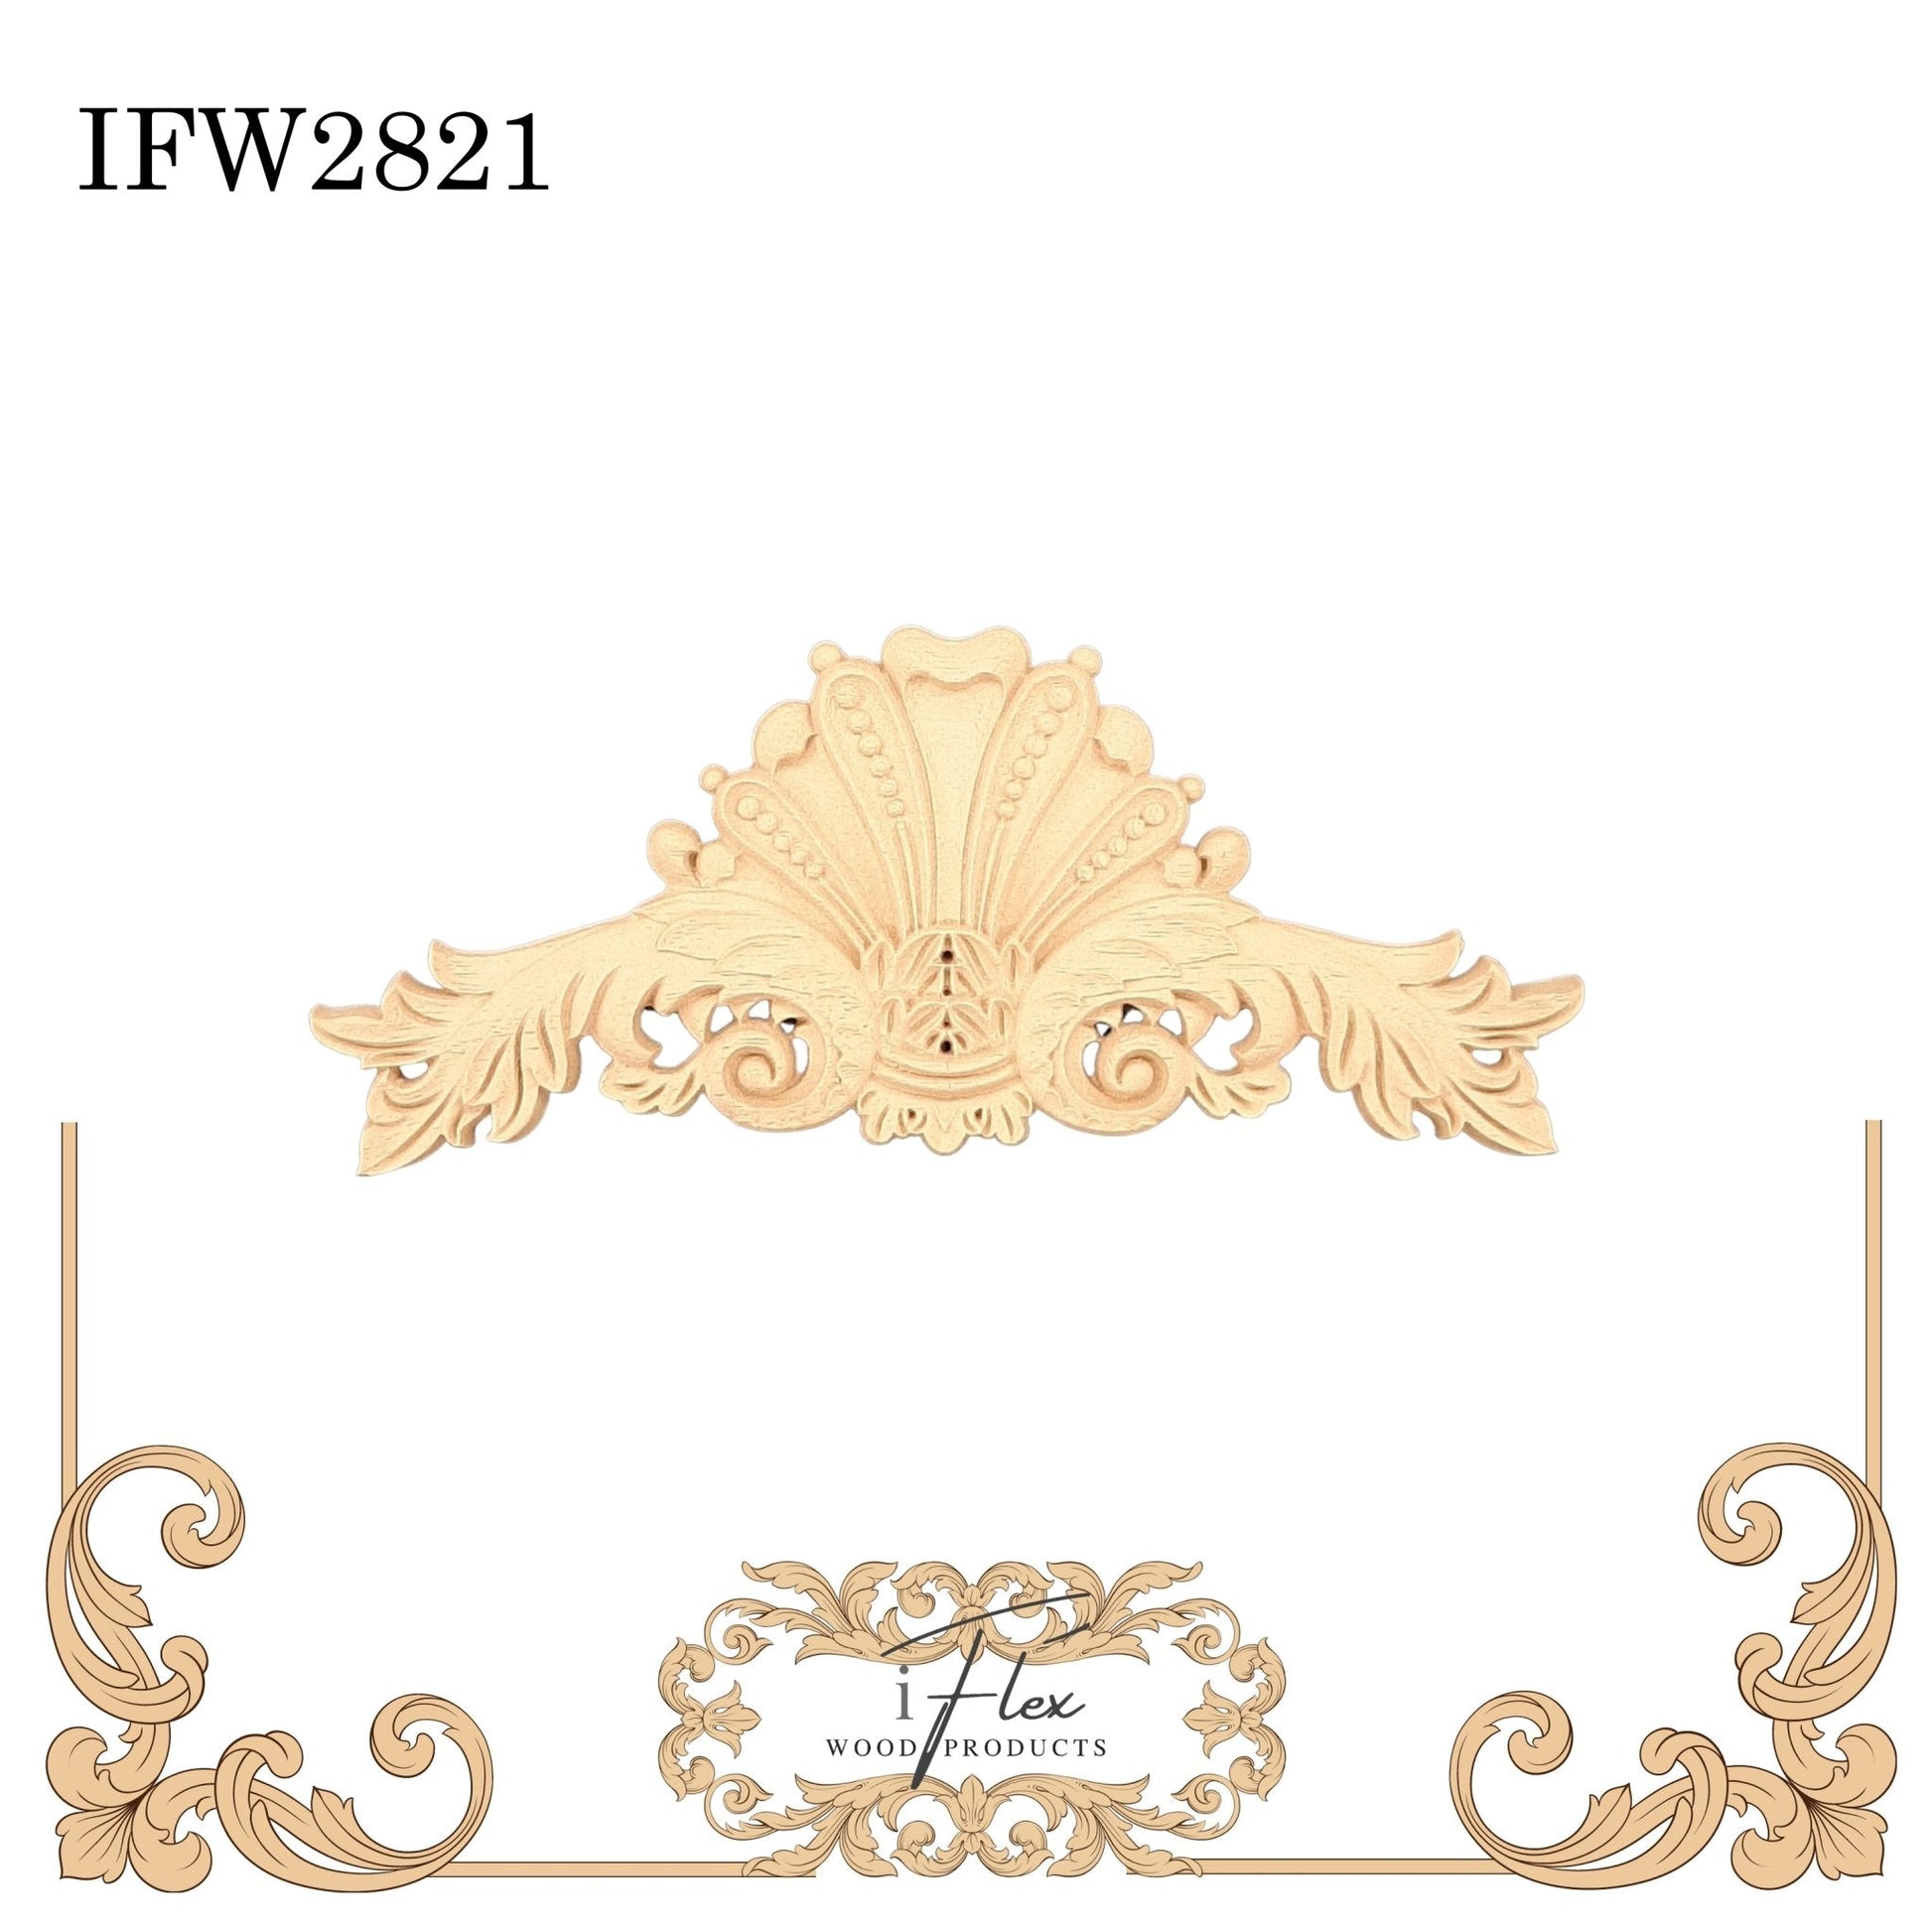 IFW 2821